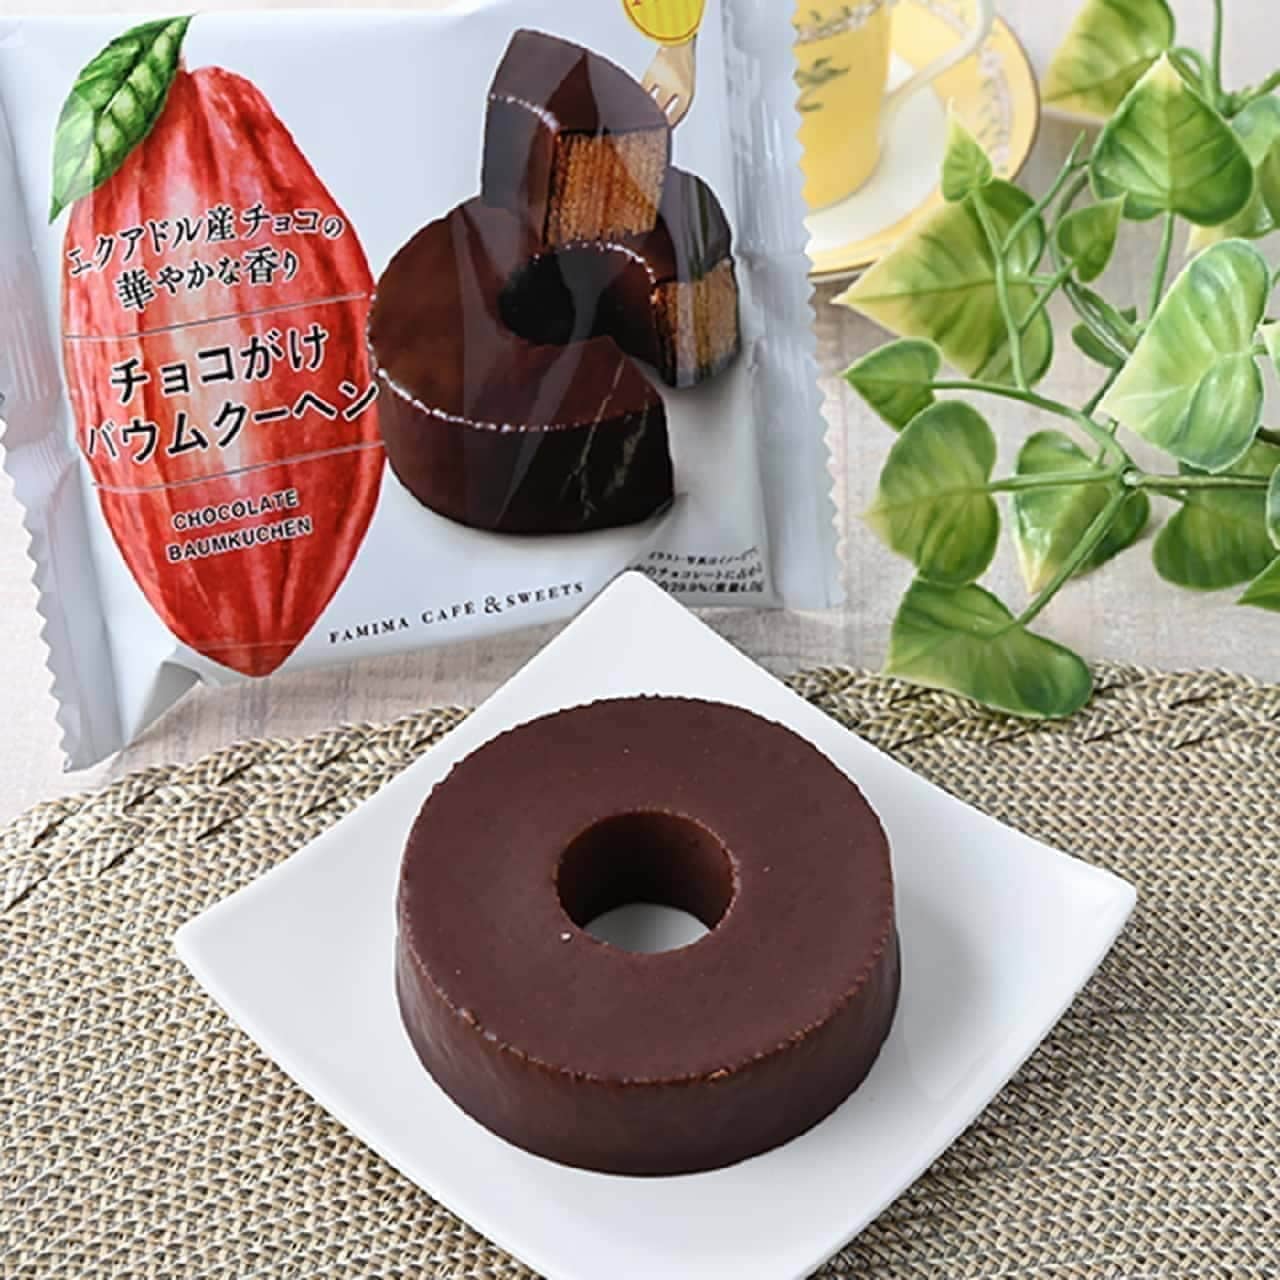 Famima "Chocolate-Covered Baumkuchen